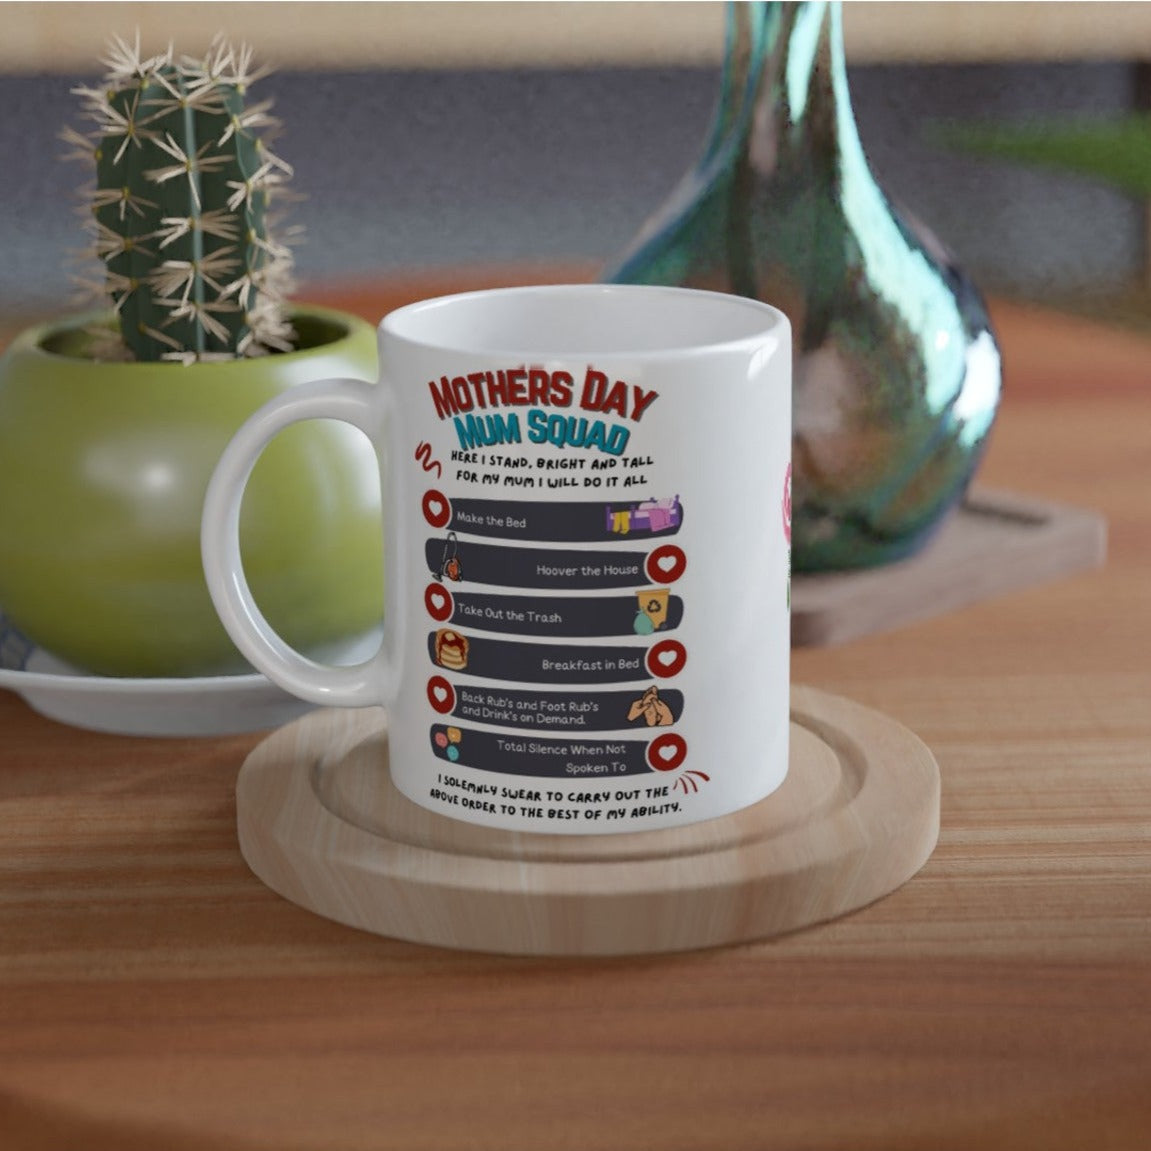 Mothers day, Mum Squad  : White 11oz Ceramic Mug